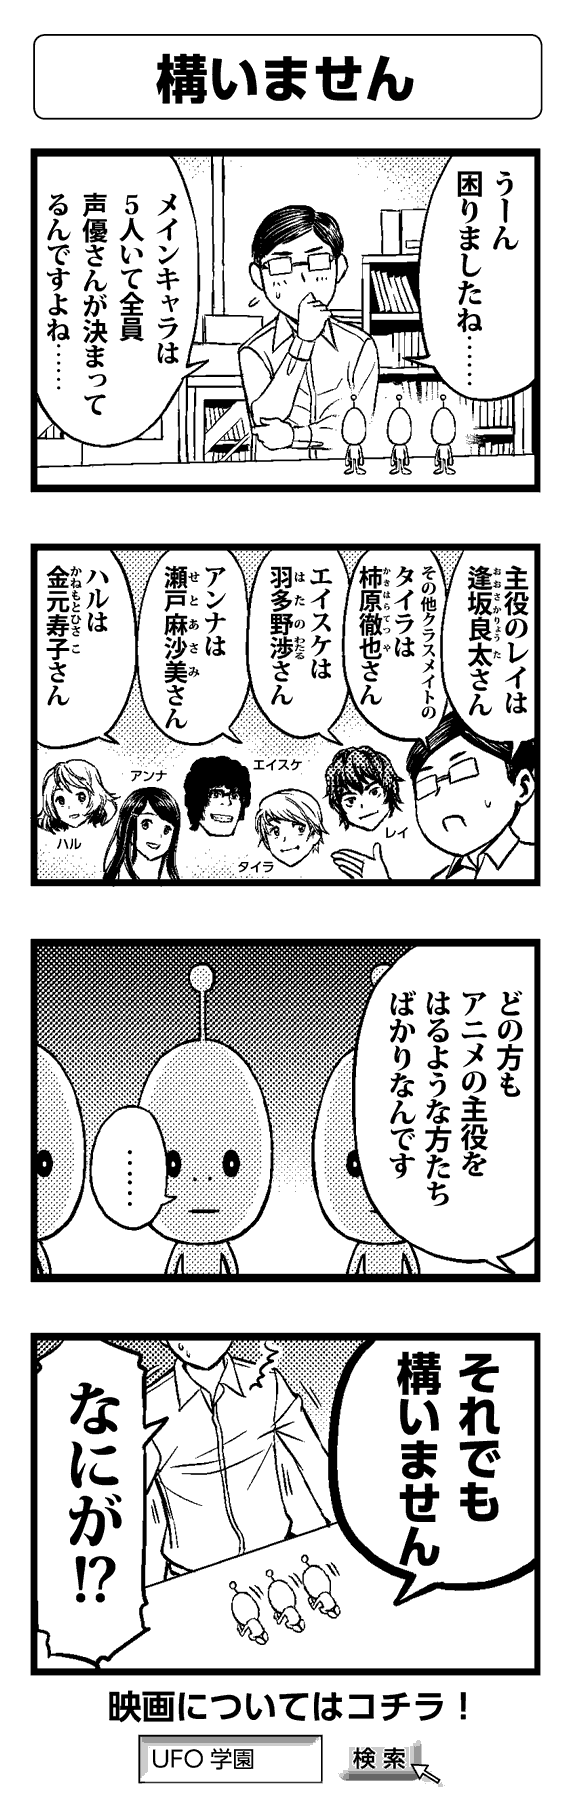 構いません - 四コマ漫画ノンフィクション #011